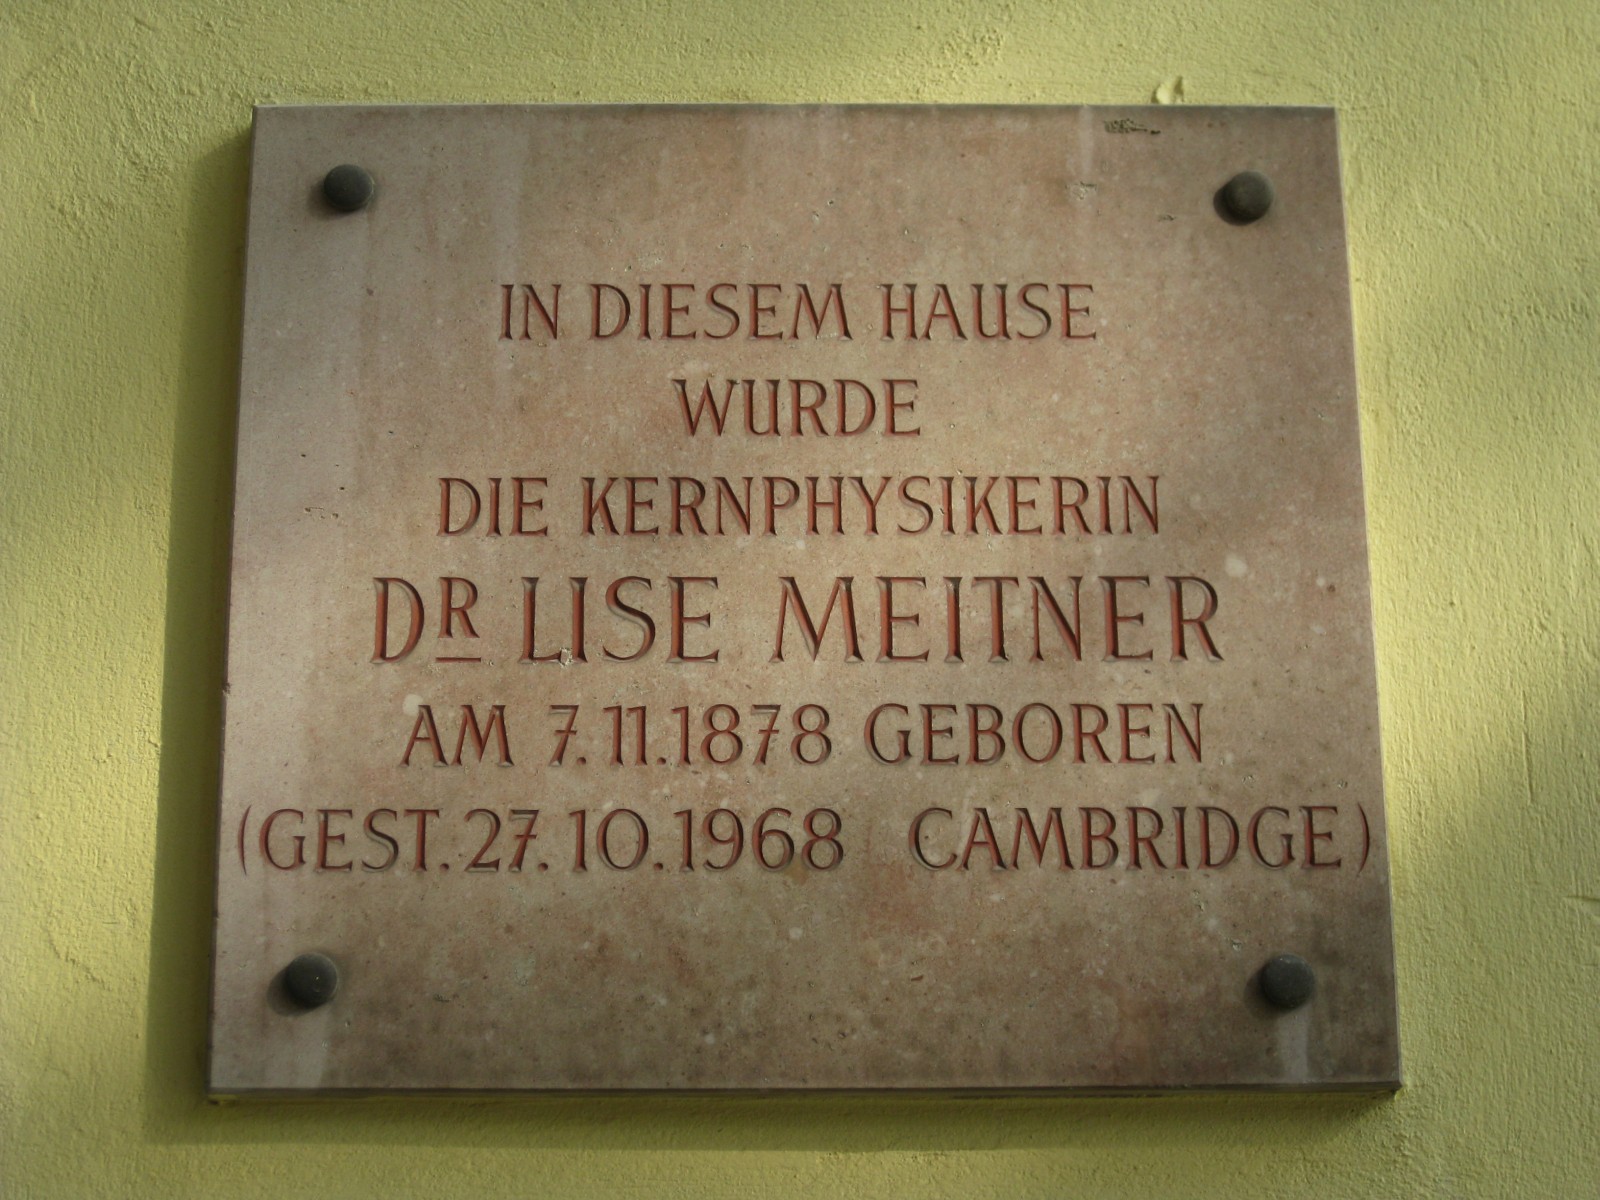 1020 Heinestraße 27 - Lise Meitner-Gedenktafel IMG 5482.jpg